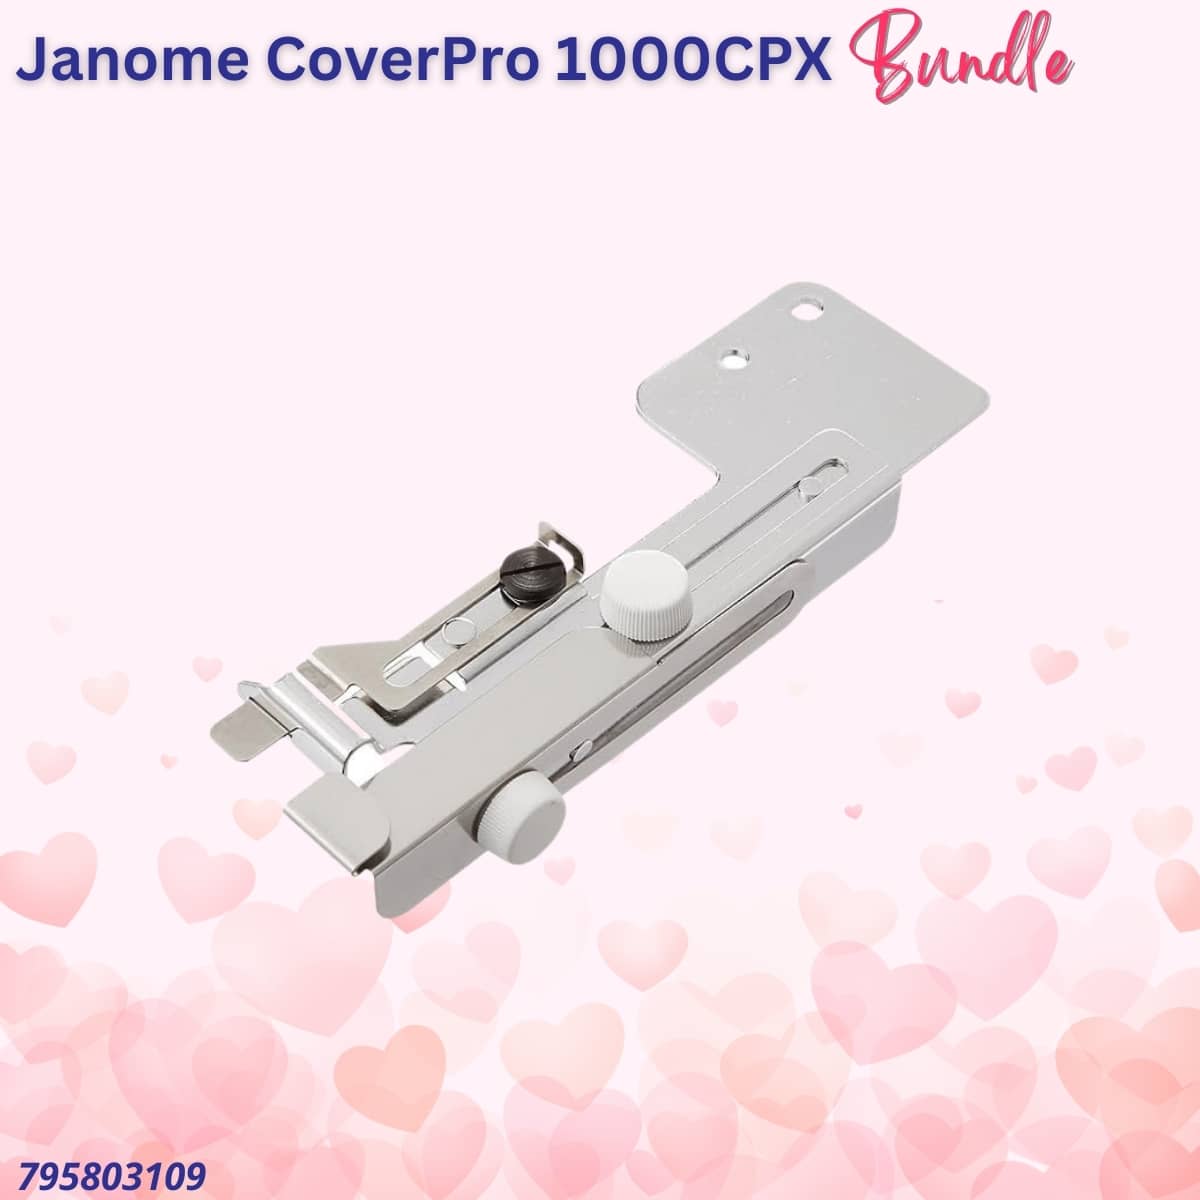 Janome CoverPro 1000X bundle for Valentine's Sale